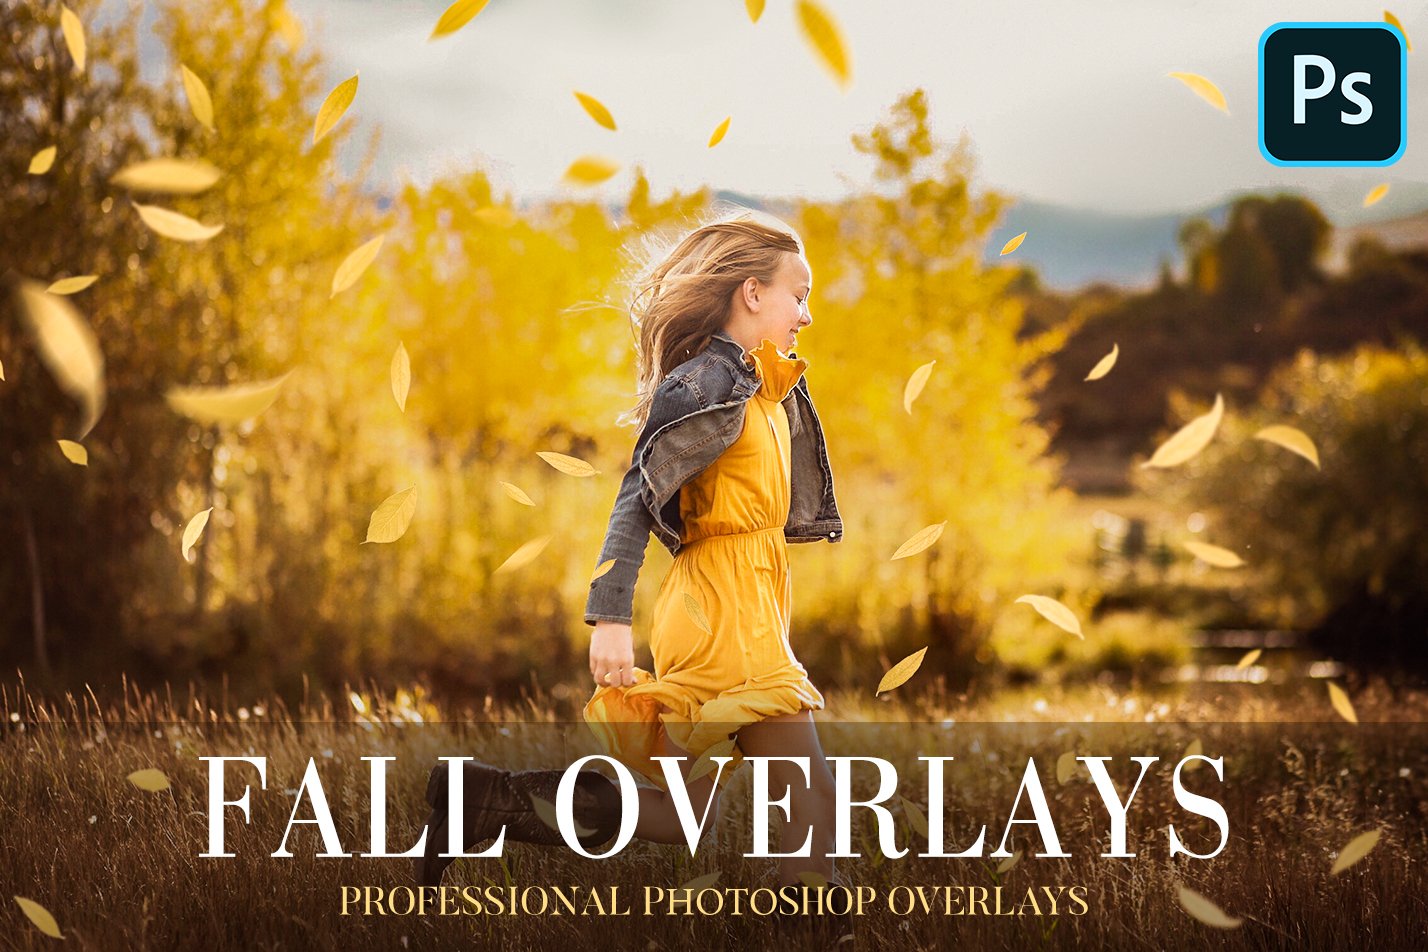 Fall Overlays Photoshopcover image.